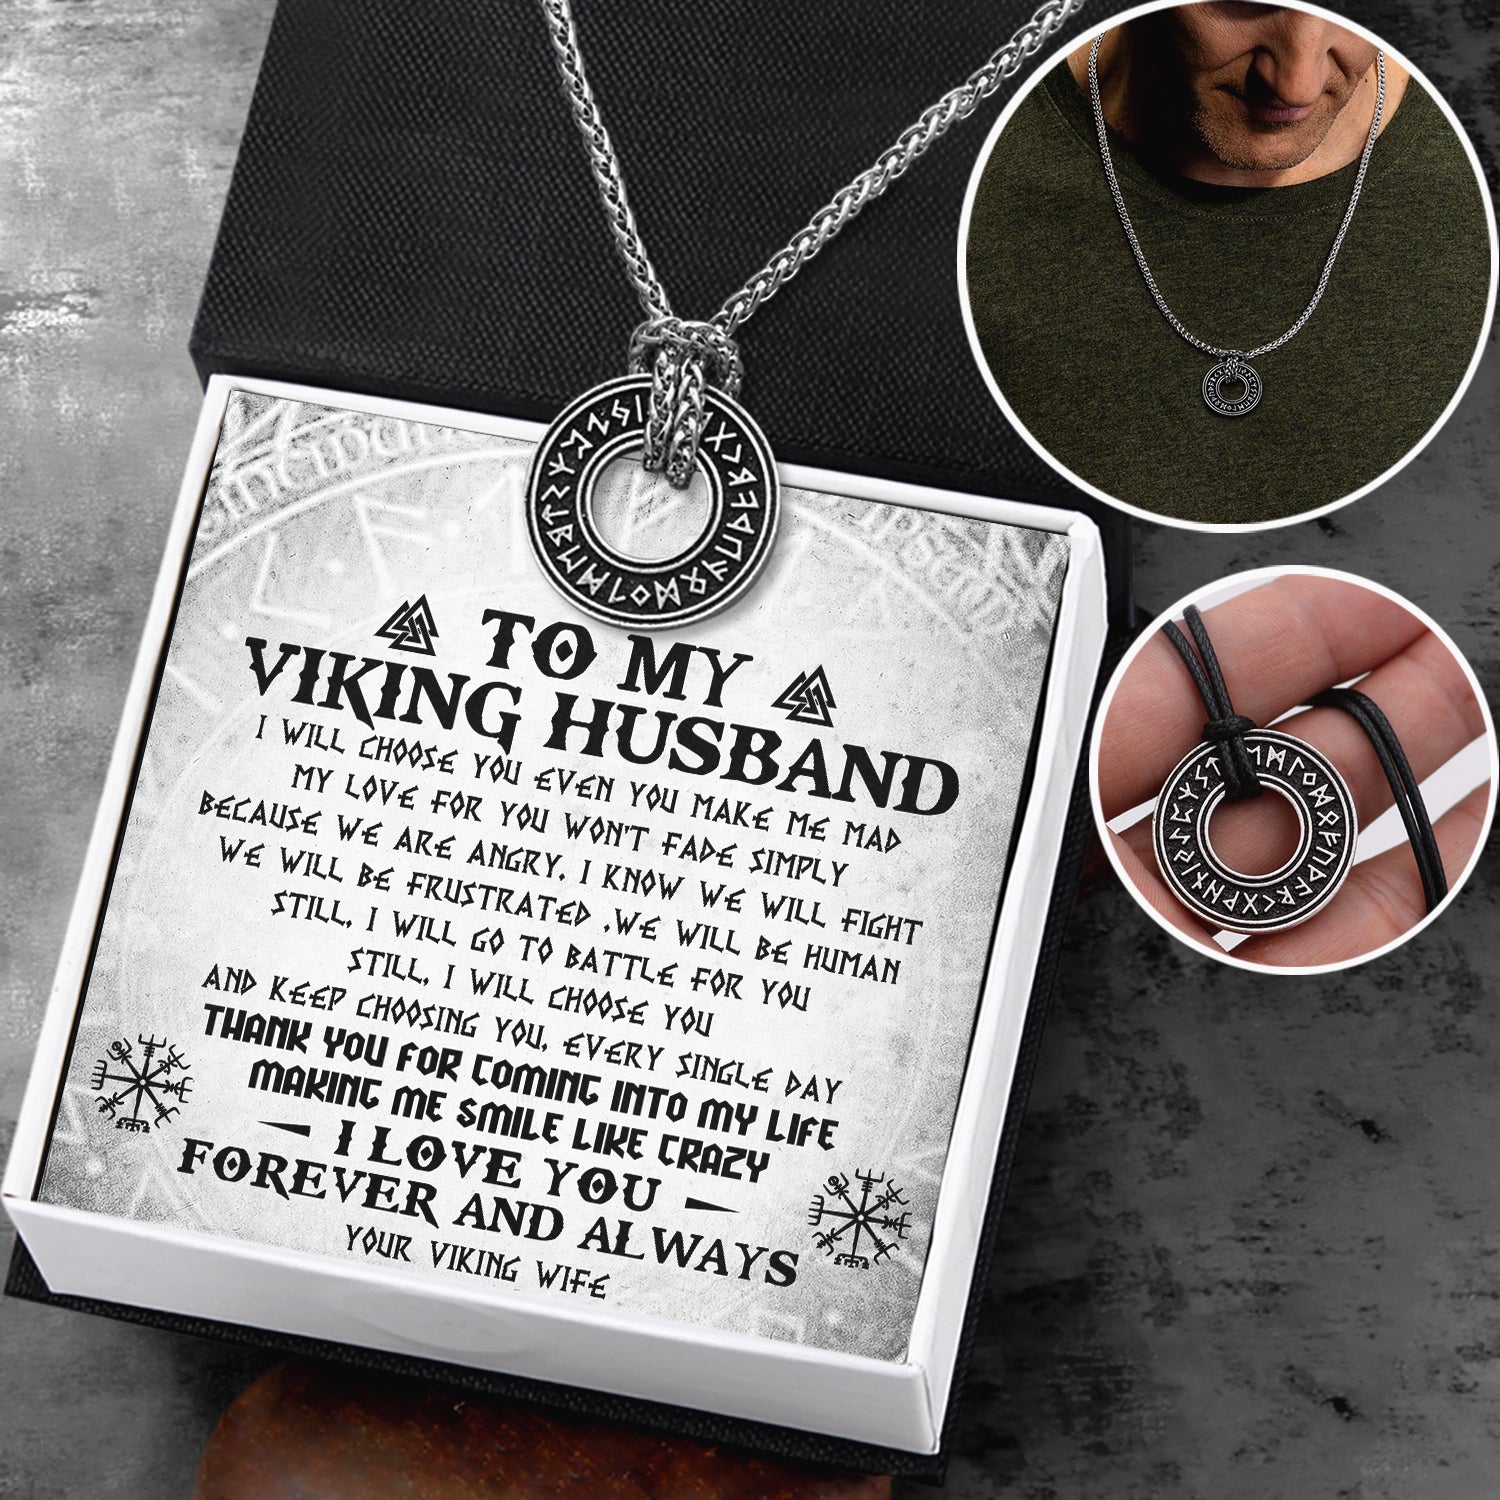 Viking Rune Necklace - Viking - To My Viking Husband - I Love You Forever & Always - Ukgndy14002